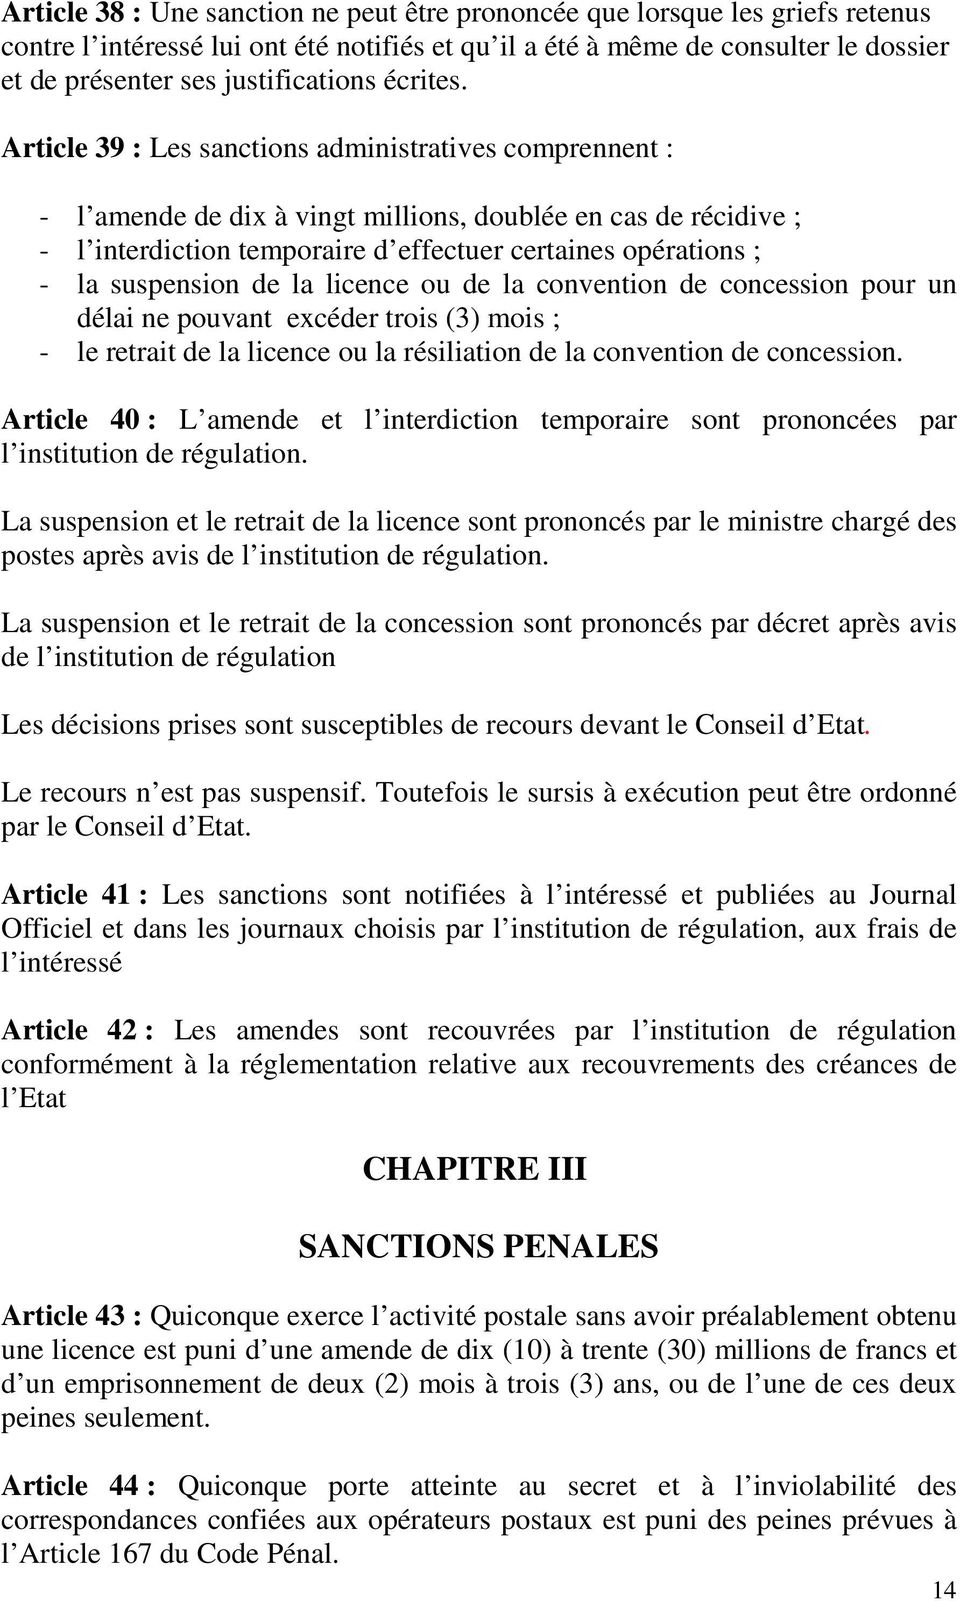 Article 39 : Les sanctions administratives comprennent : - l amende de dix à vingt millions, doublée en cas de récidive ; - l interdiction temporaire d effectuer certaines opérations ; - la